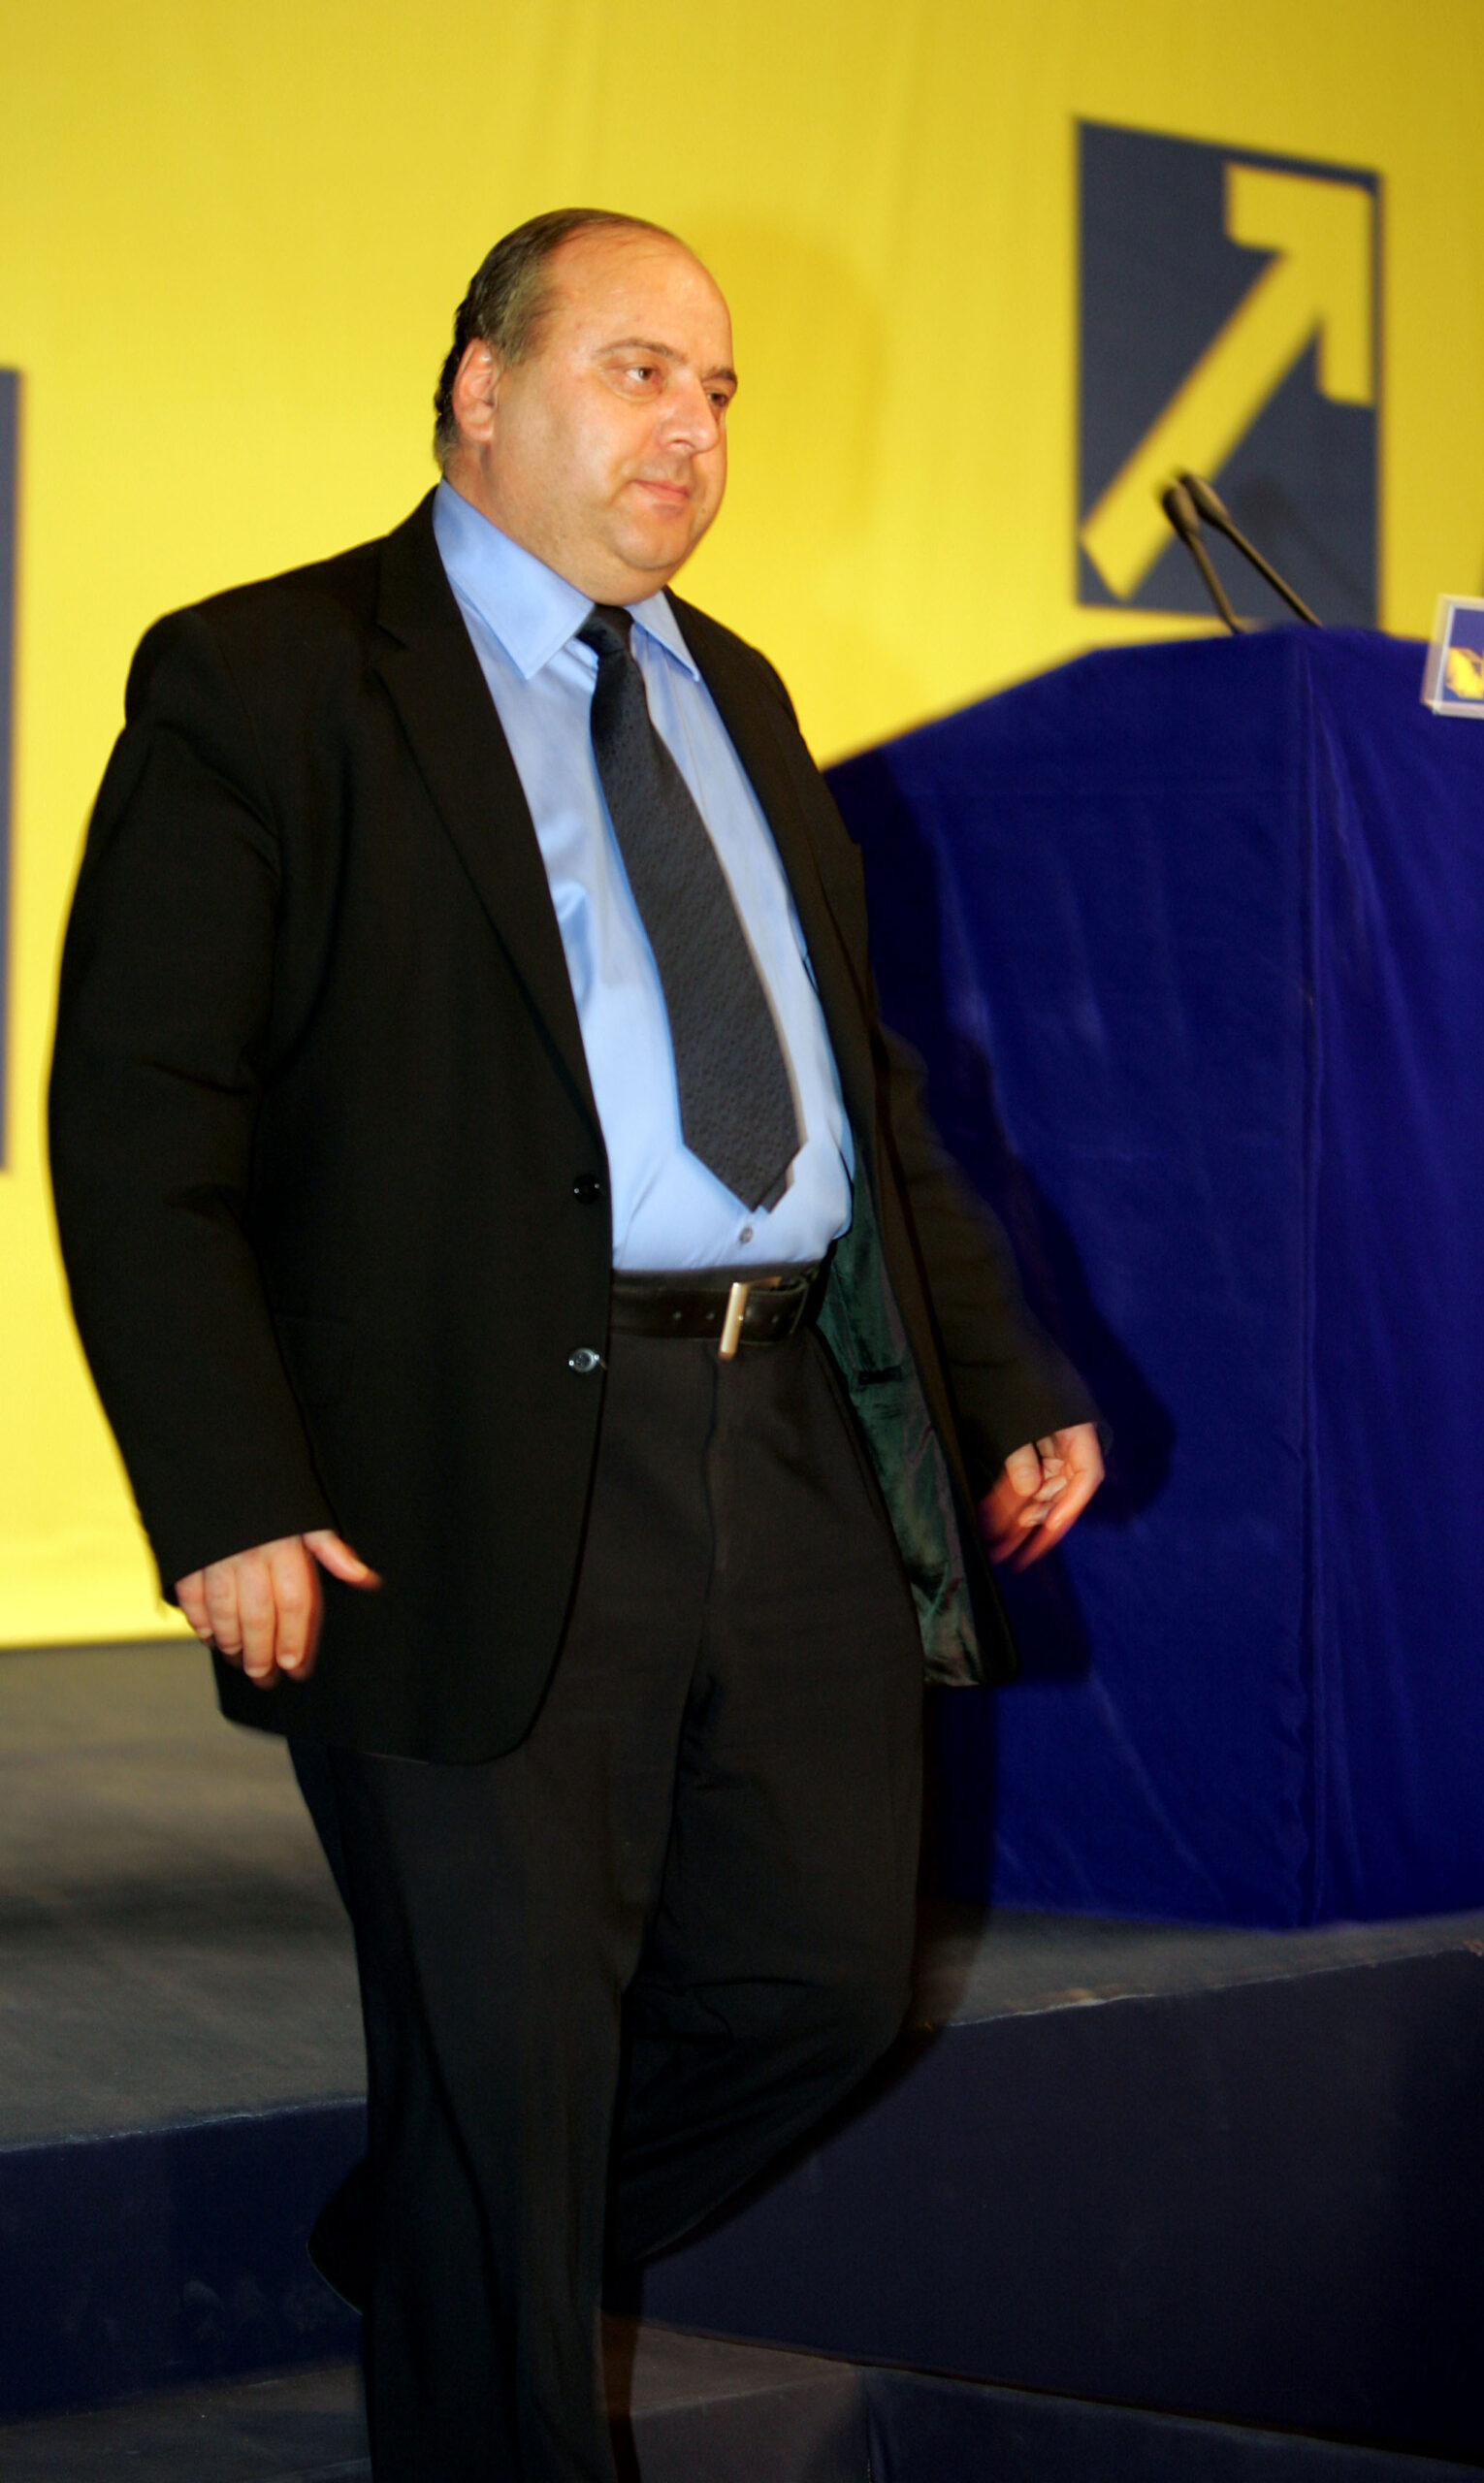 Presedintele clubului de fotbal Ceahlaul Piatra Neamt, membru al Partidului National Liberal, a participat la congresul partidului in calitatea sa de  reprezentant local al PNL.